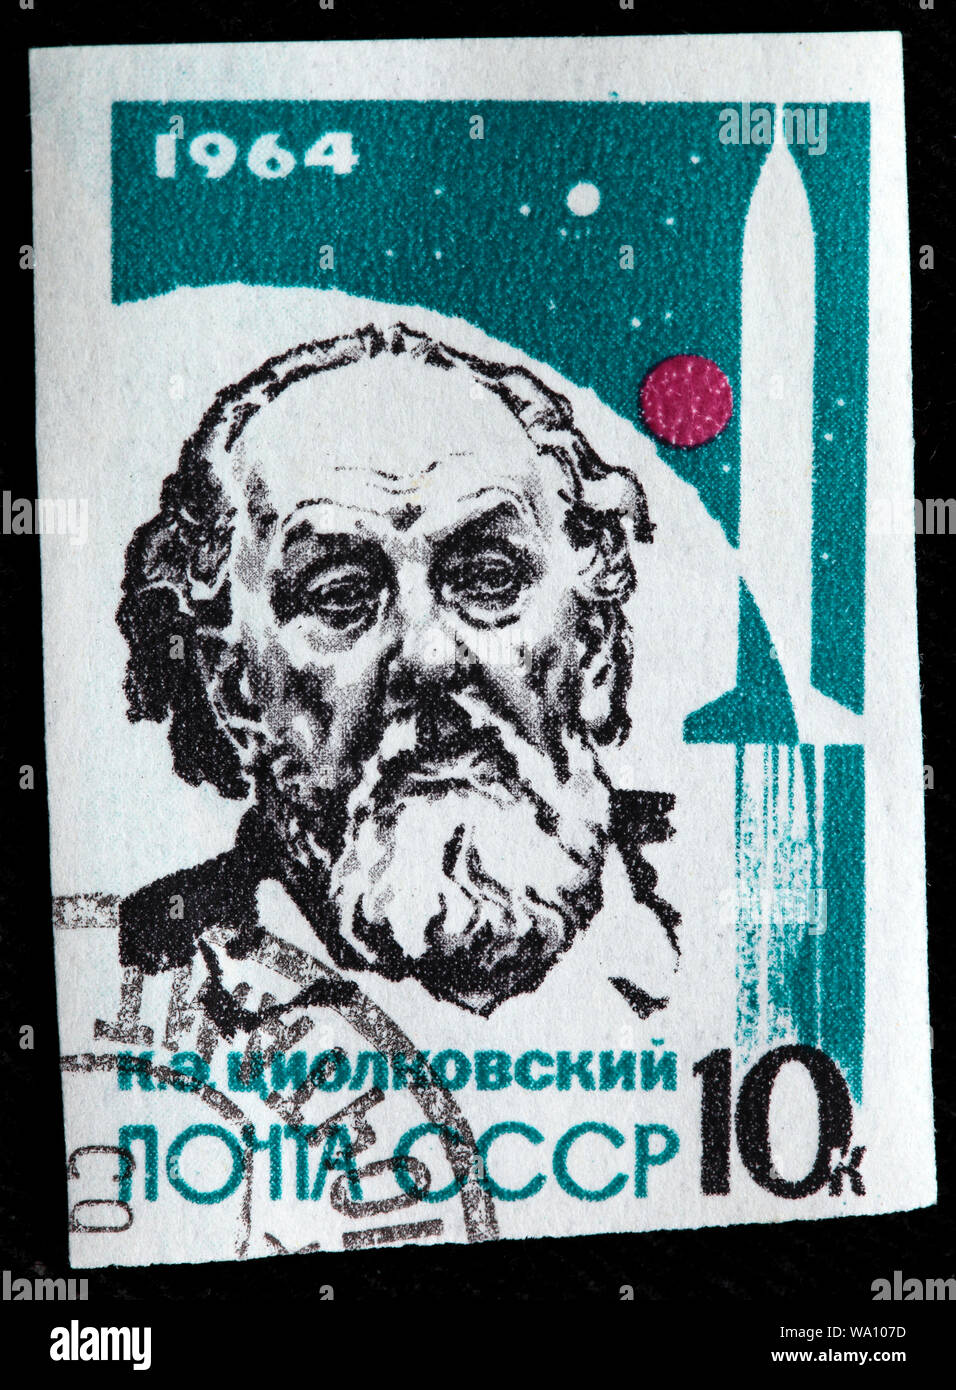 Konstantin Tsiolkovsky (1857-1935), il razzo russo scienziato, pioniere della teoria astronautica, francobollo, Russia, URSS, 1964 Foto Stock